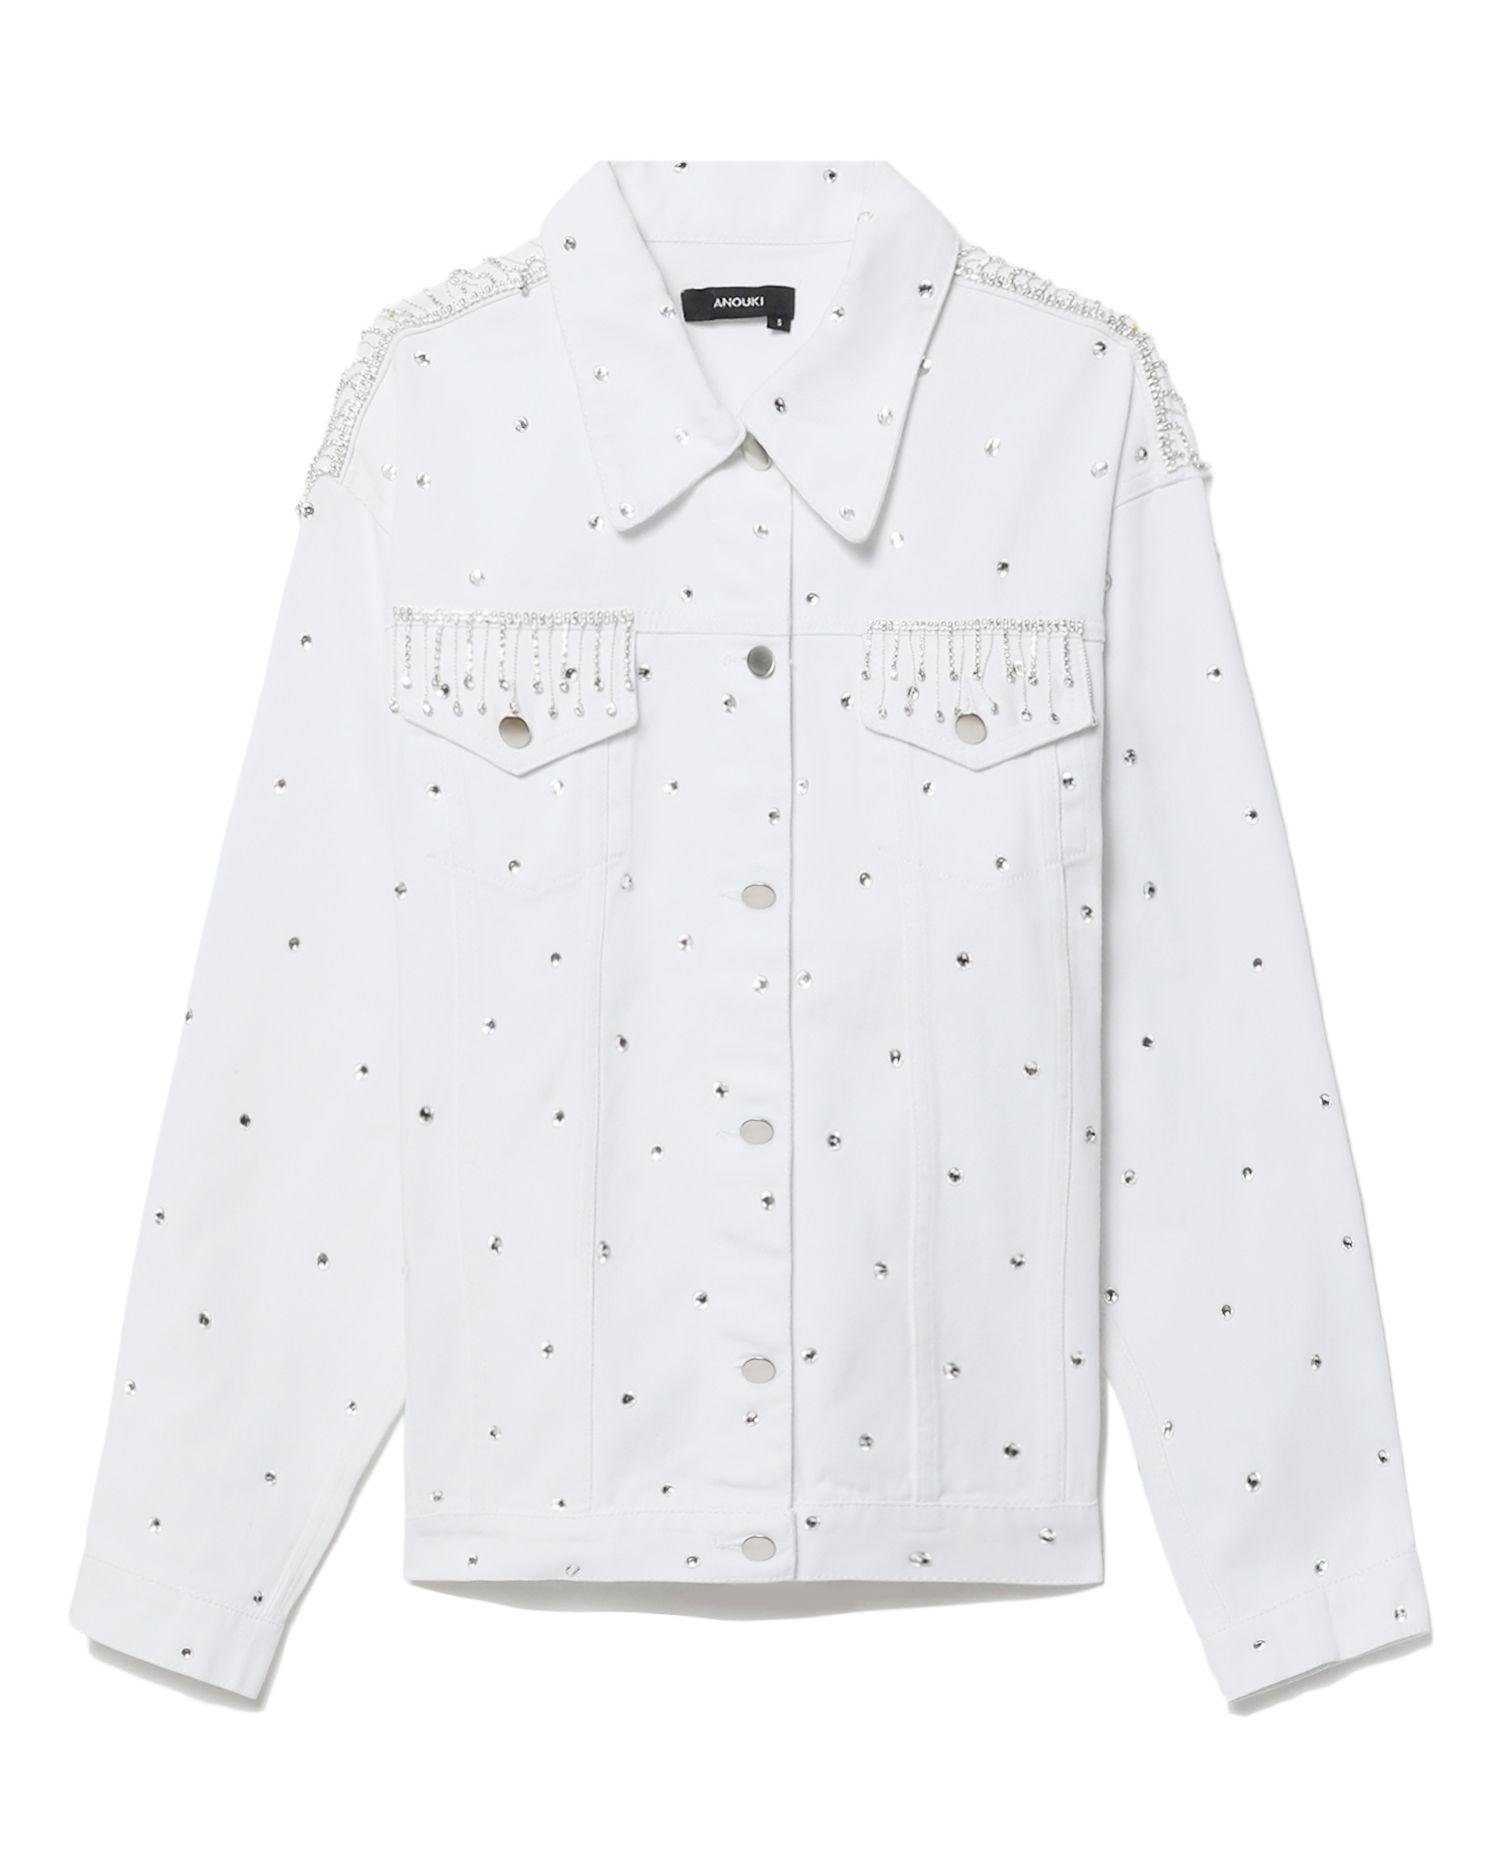 Crystal embellished jacket by ANOUKI